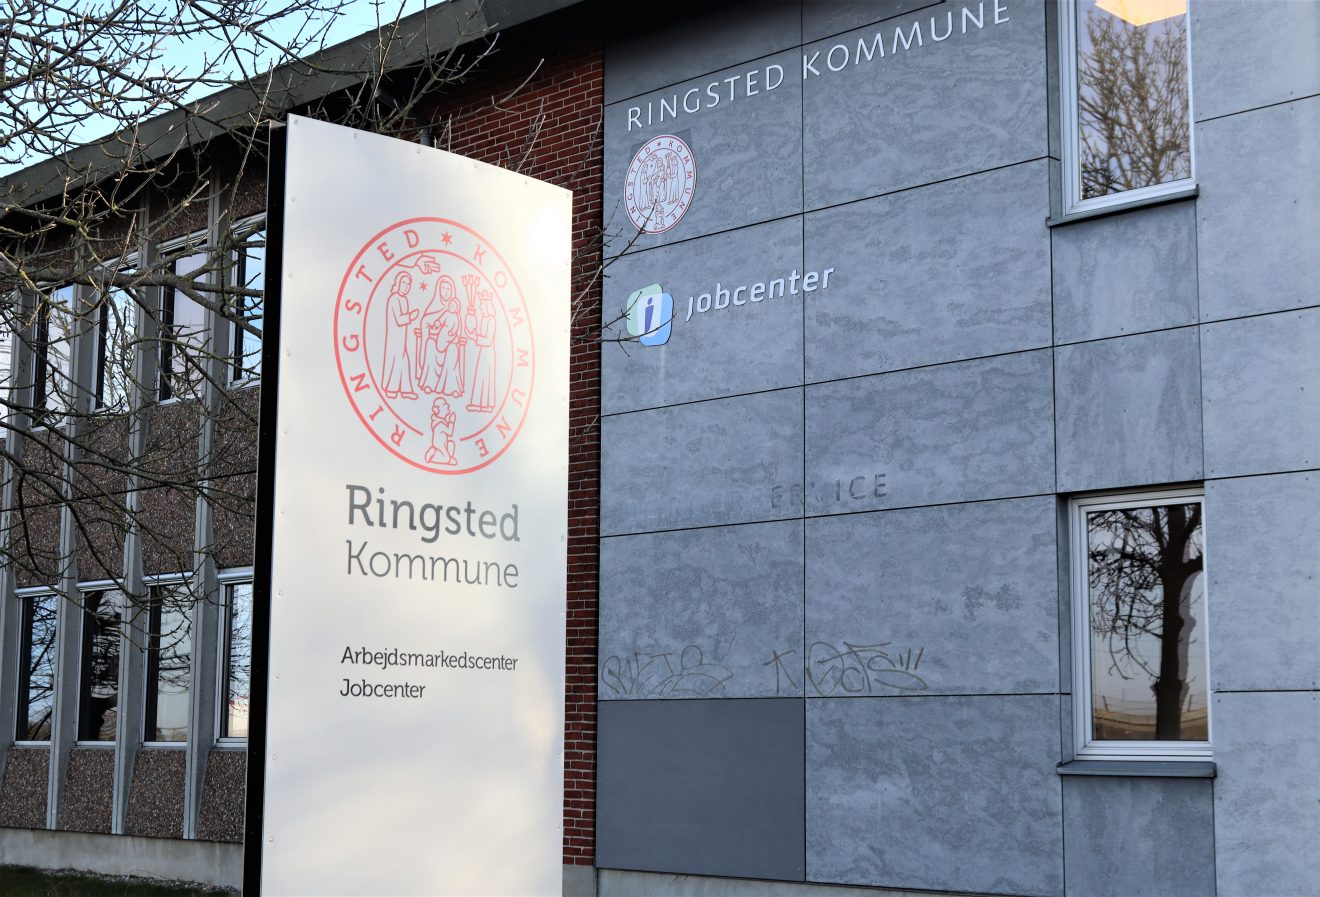 Kontanthjælpsmodtagere i Ringsted Kommune kommer i job